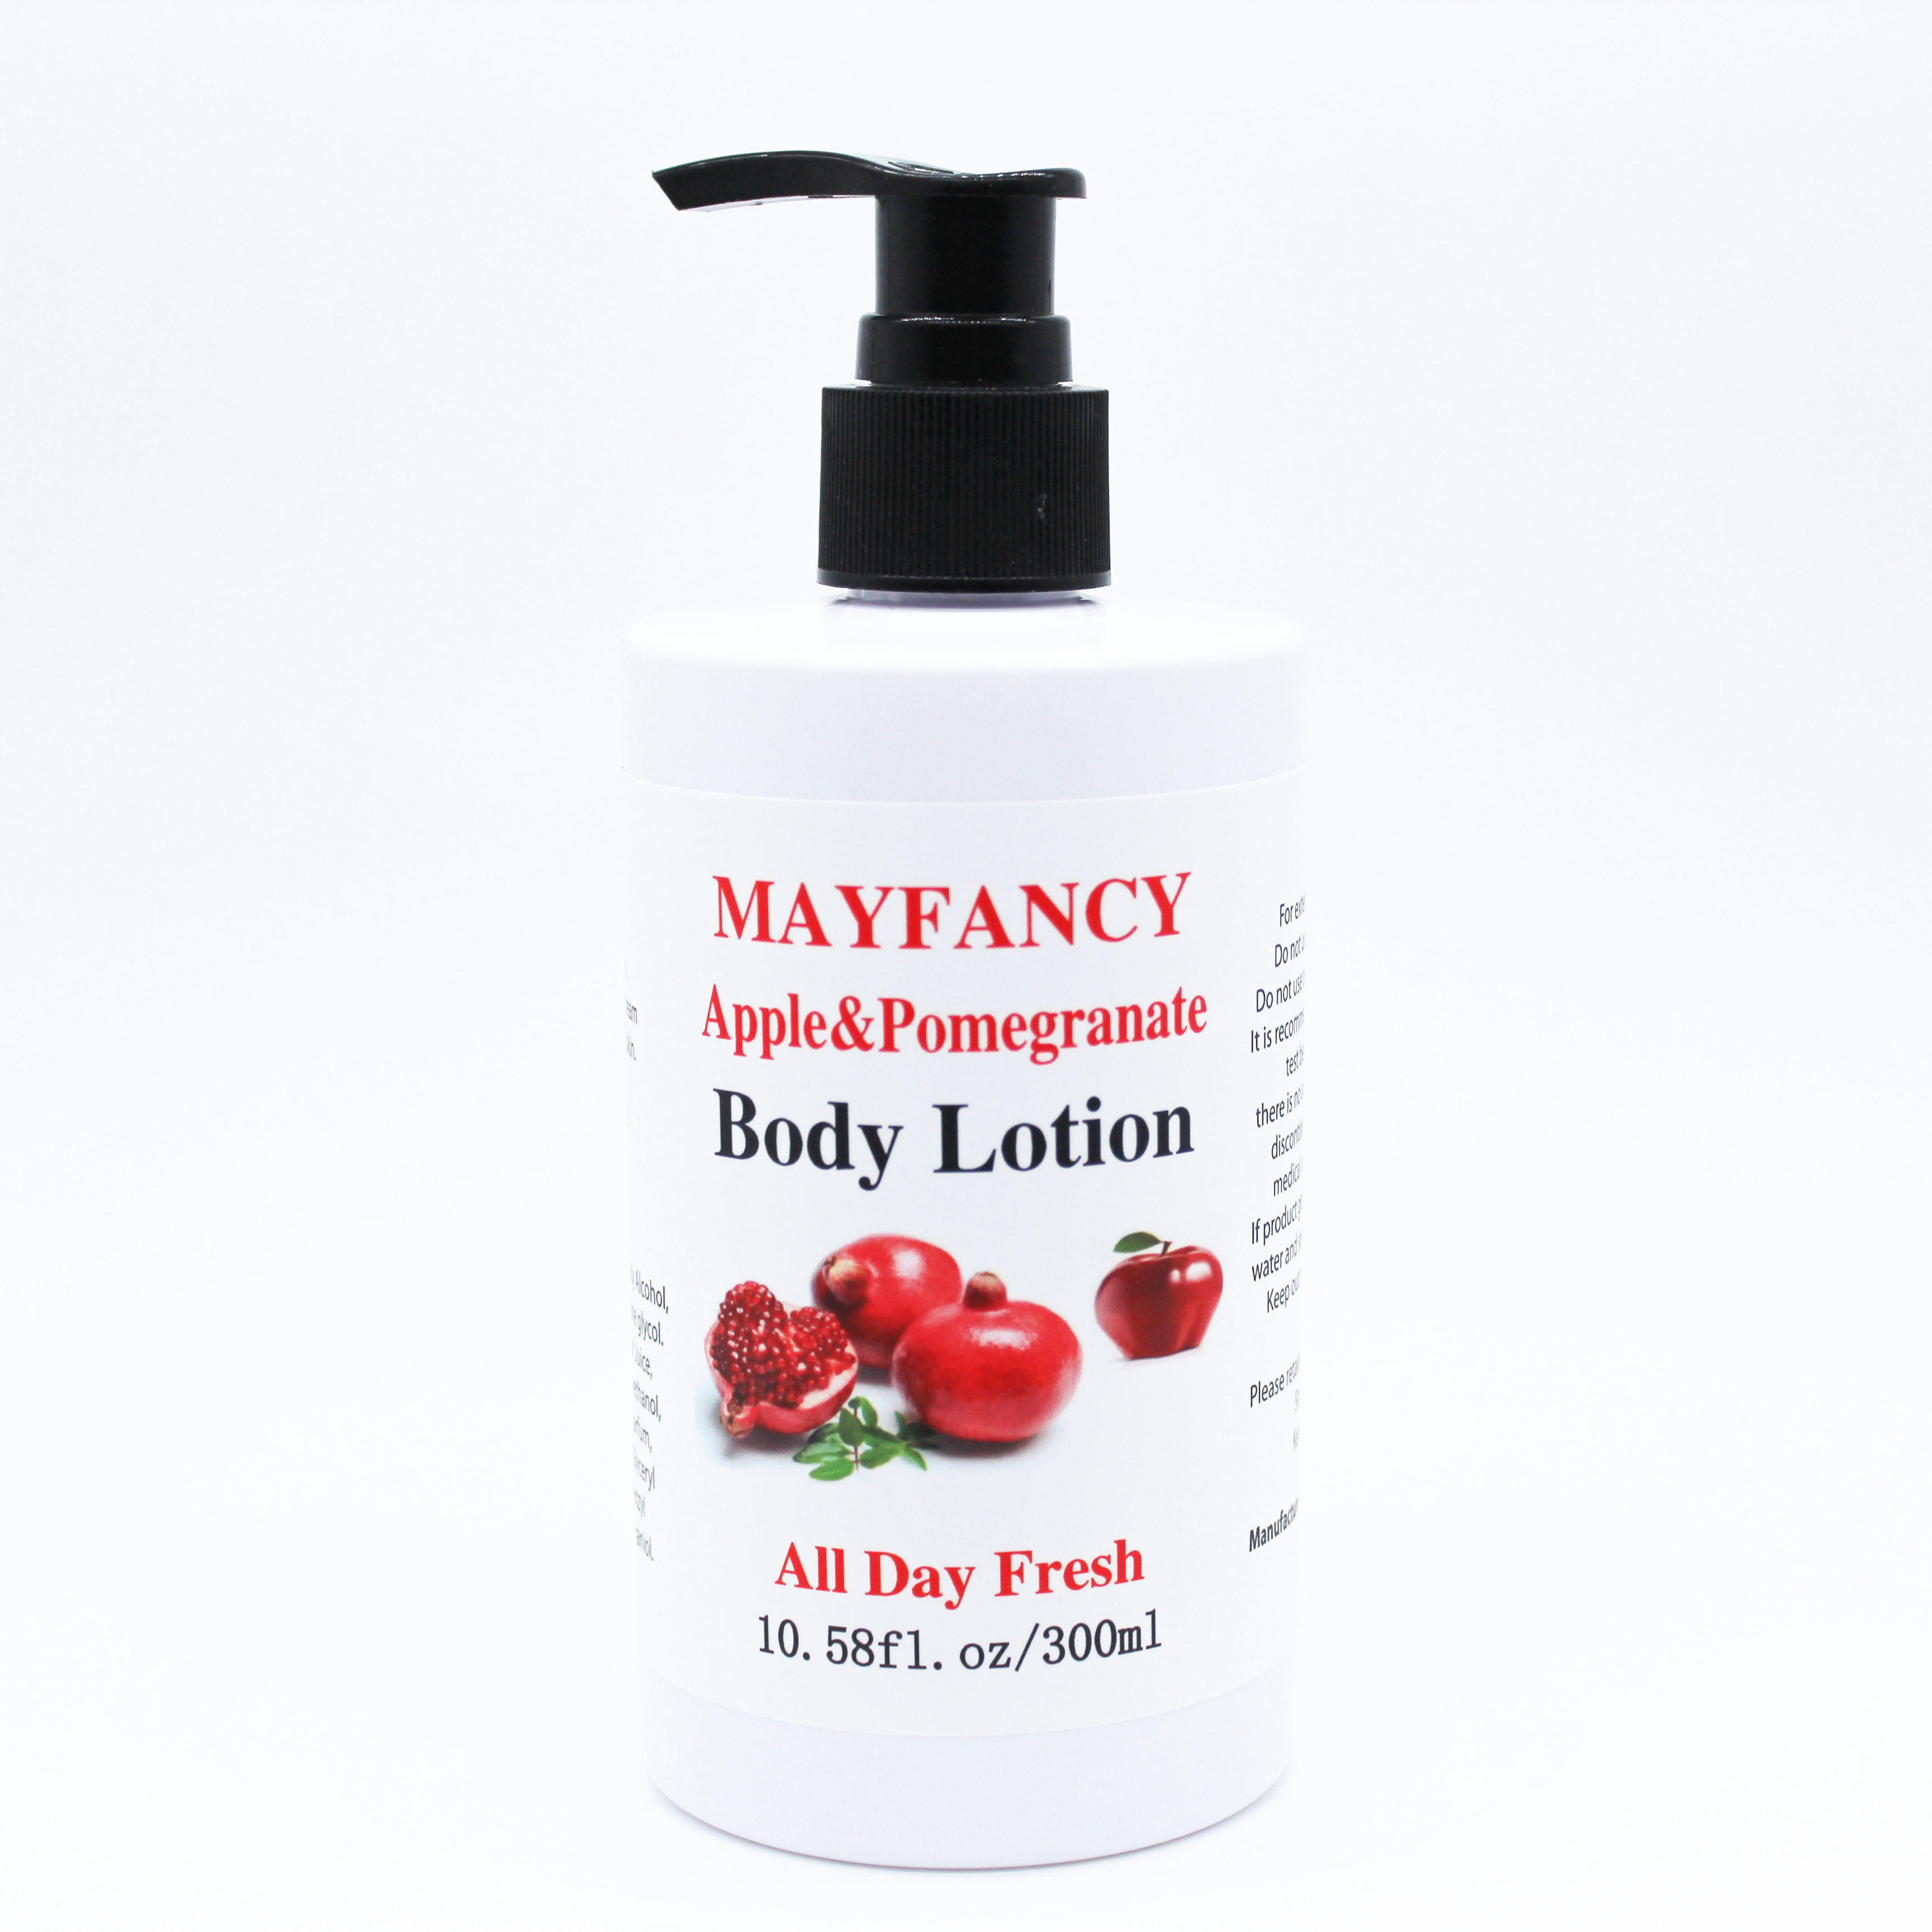 Mayfancy Apple Pomegranate Body Lotion